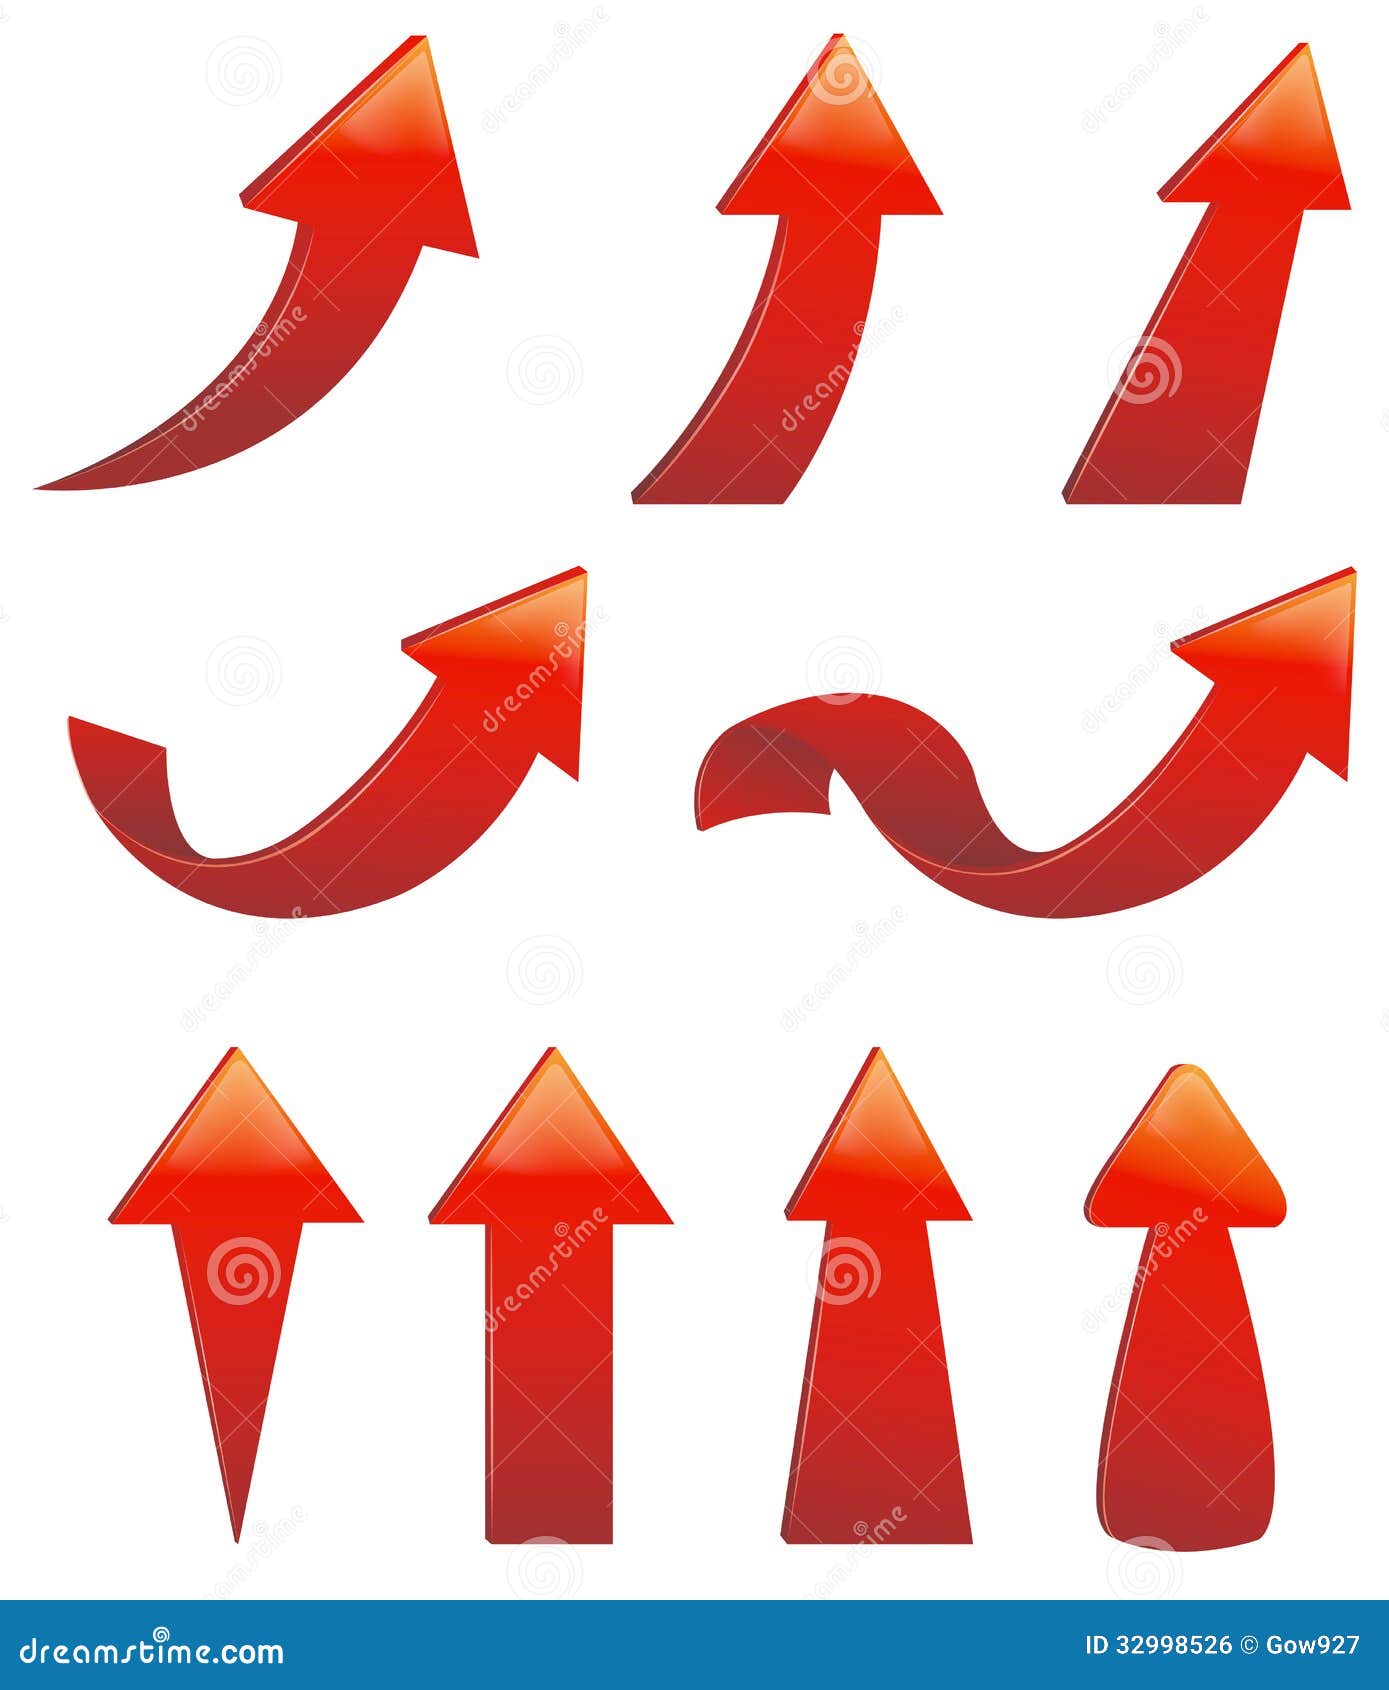 type of various arrow set